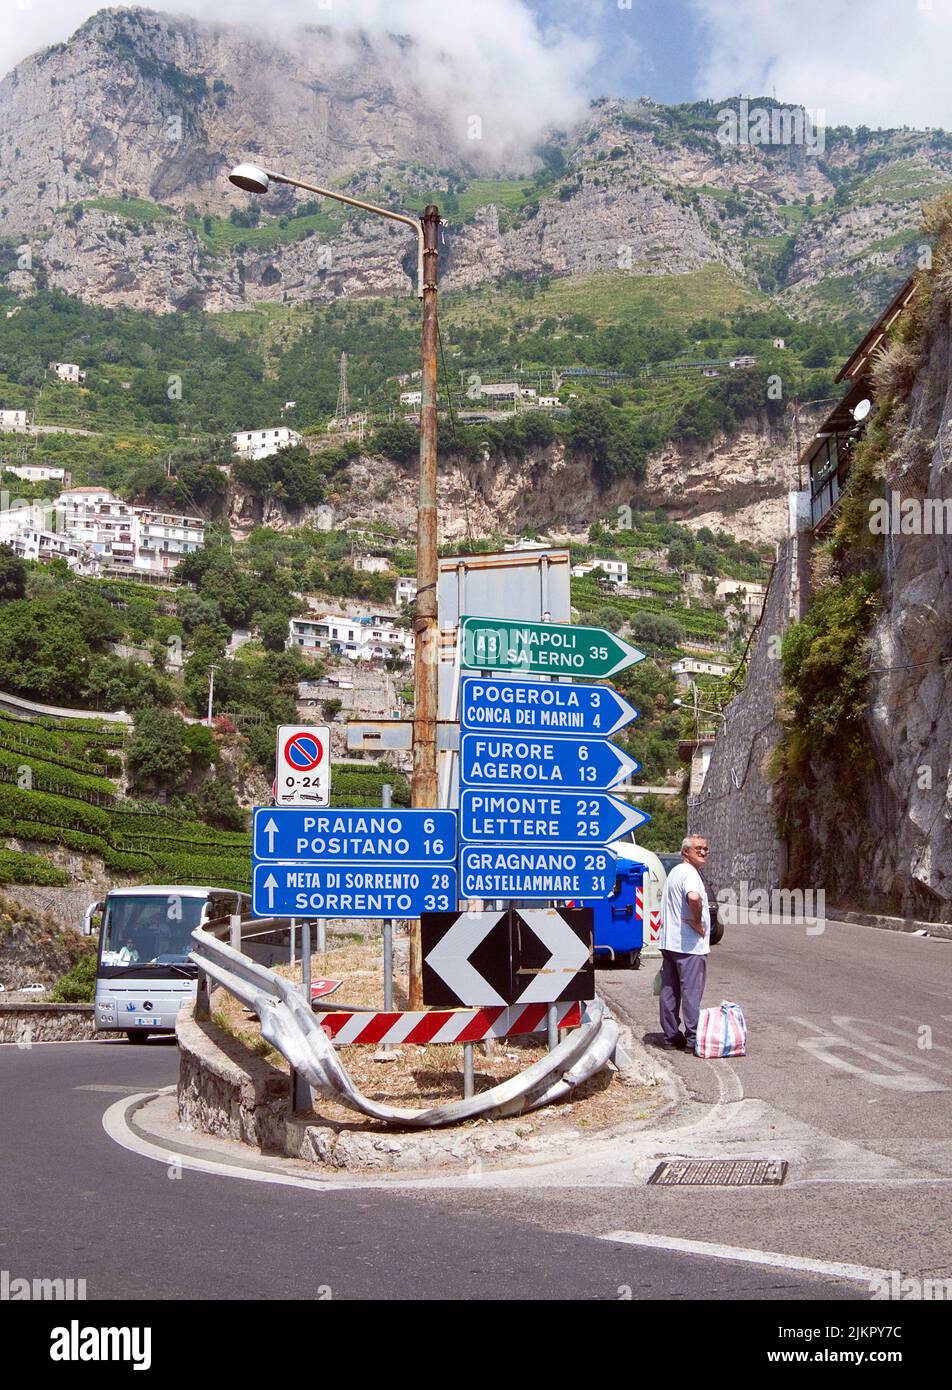 Panneaux routiers et panneaux de signalisation à la célèbre route panoramique SS163 Amalfi, Amalfi, côte amalfitaine, site classé au patrimoine mondial de l'UNESCO, Campanie, Italie, Europe Banque D'Images